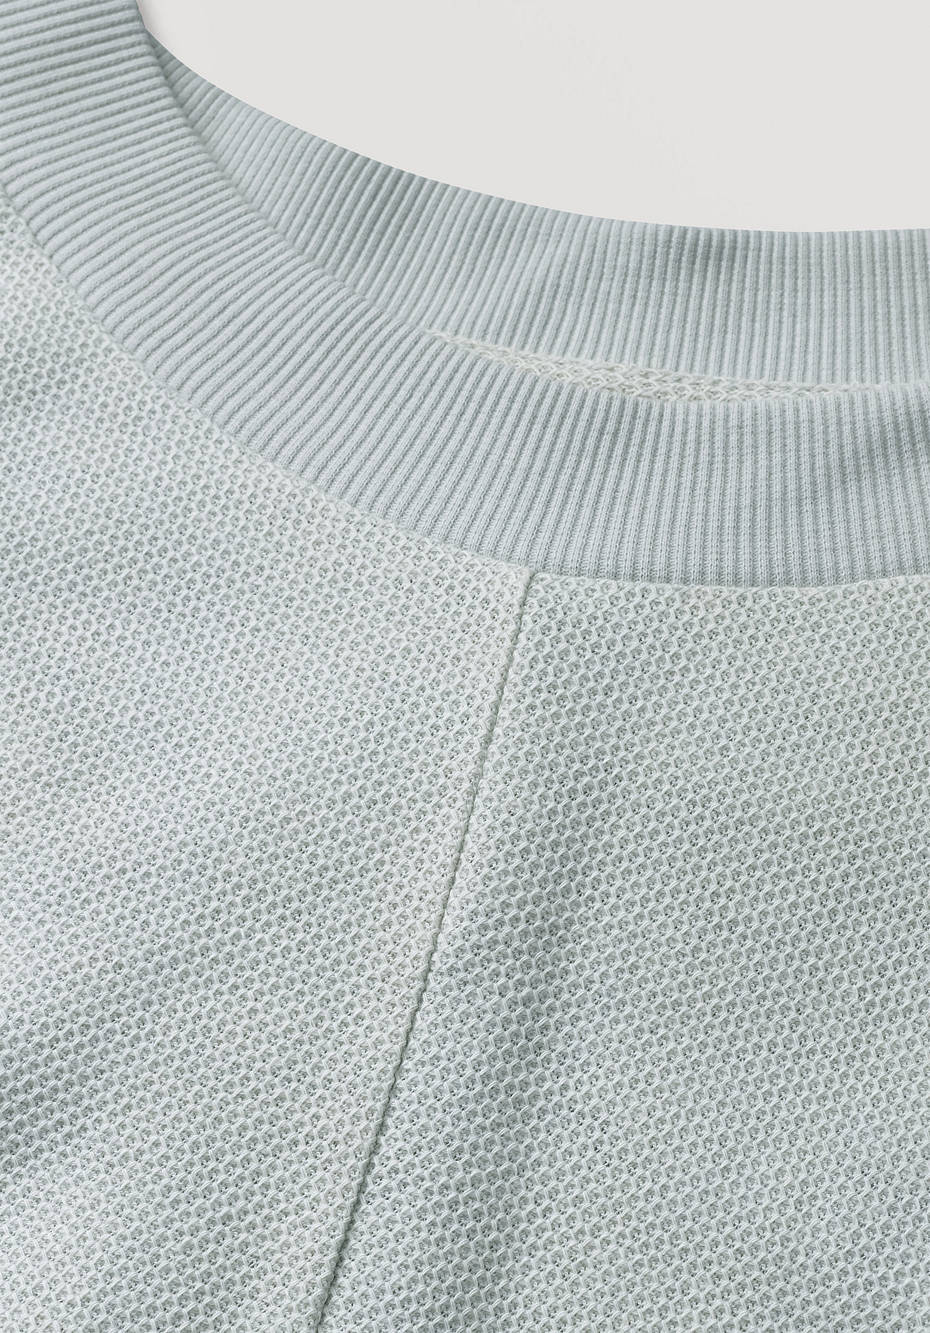 Maxi shirt made of organic cotton with kapok